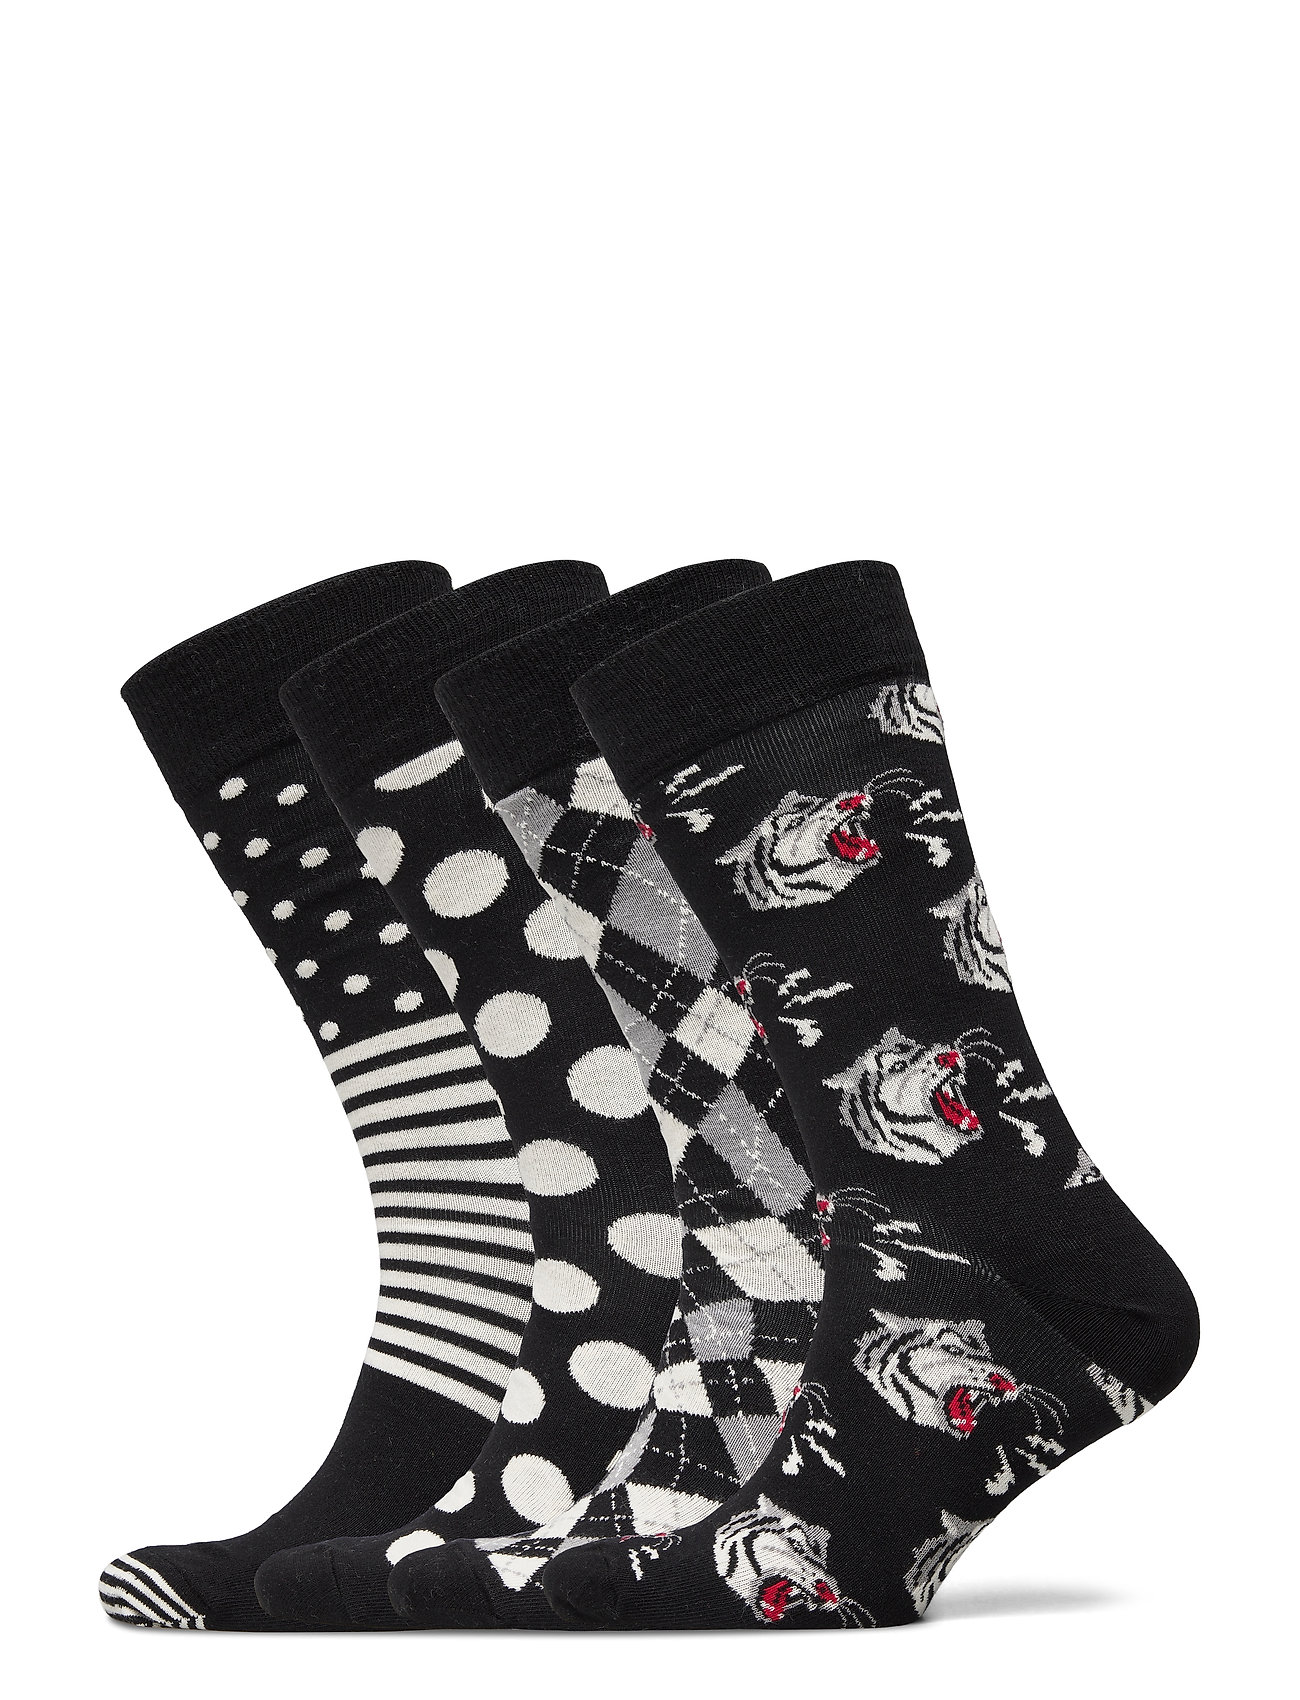 4-Pack Black & White Socks Gift Set Underwear Socks Regular Socks Musta Happy Socks